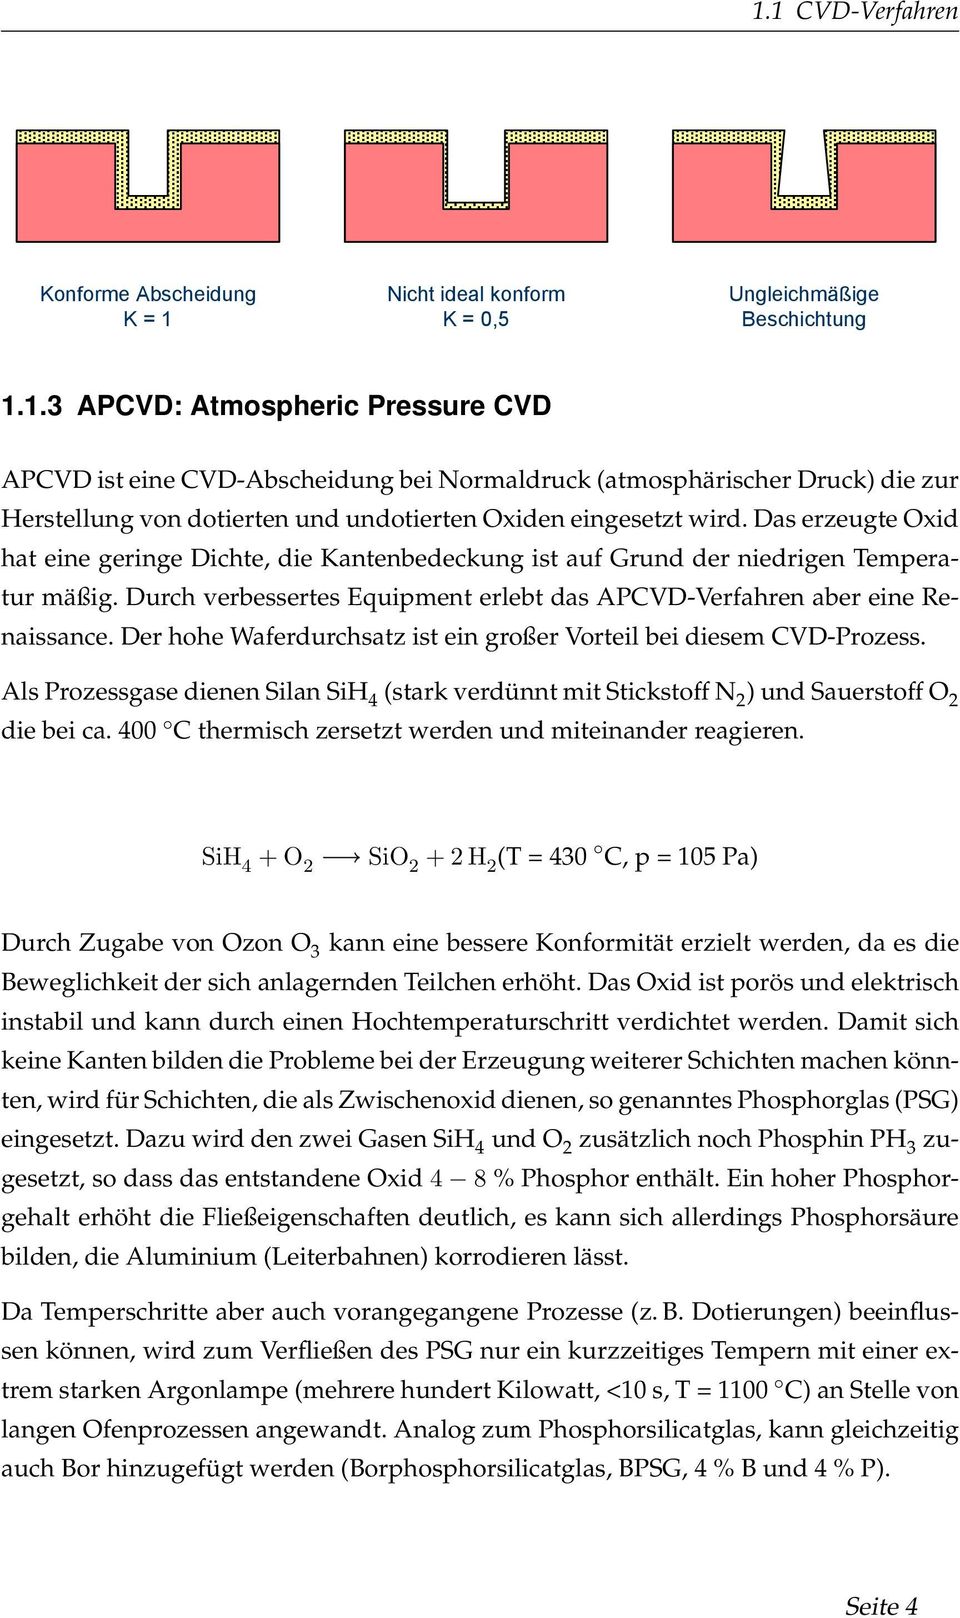 1.3 APCVD: Atmospheric Pressure CVD APCVD ist eine CVD-Abscheidung bei Normaldruck (atmosphärischer Druck) die zur Herstellung von dotierten und undotierten Oxiden eingesetzt wird.